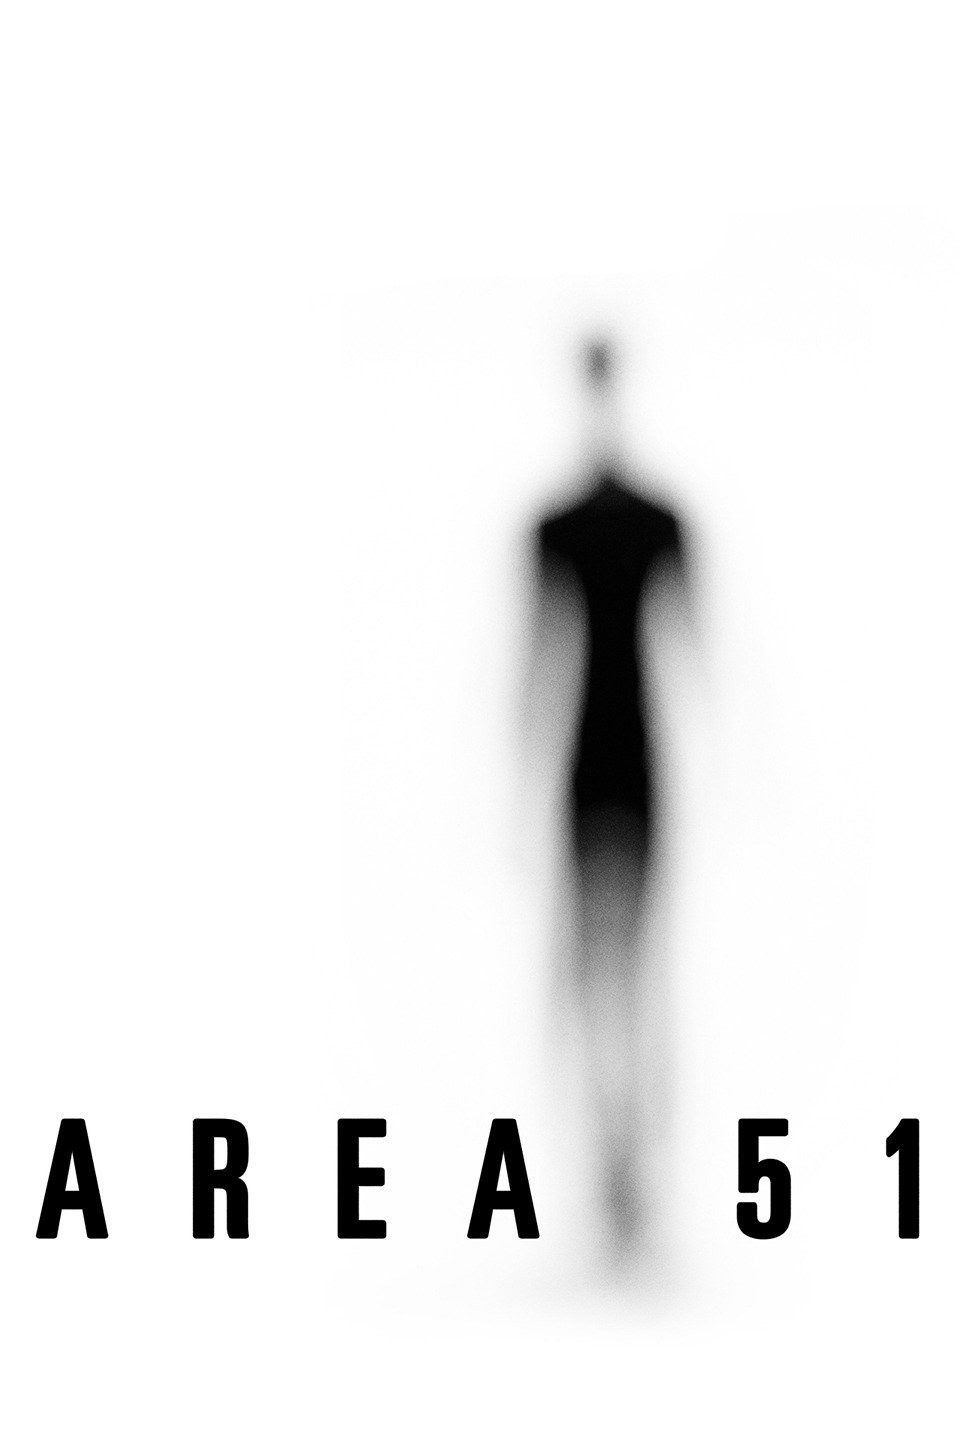 Area 51 [HD] (2015)